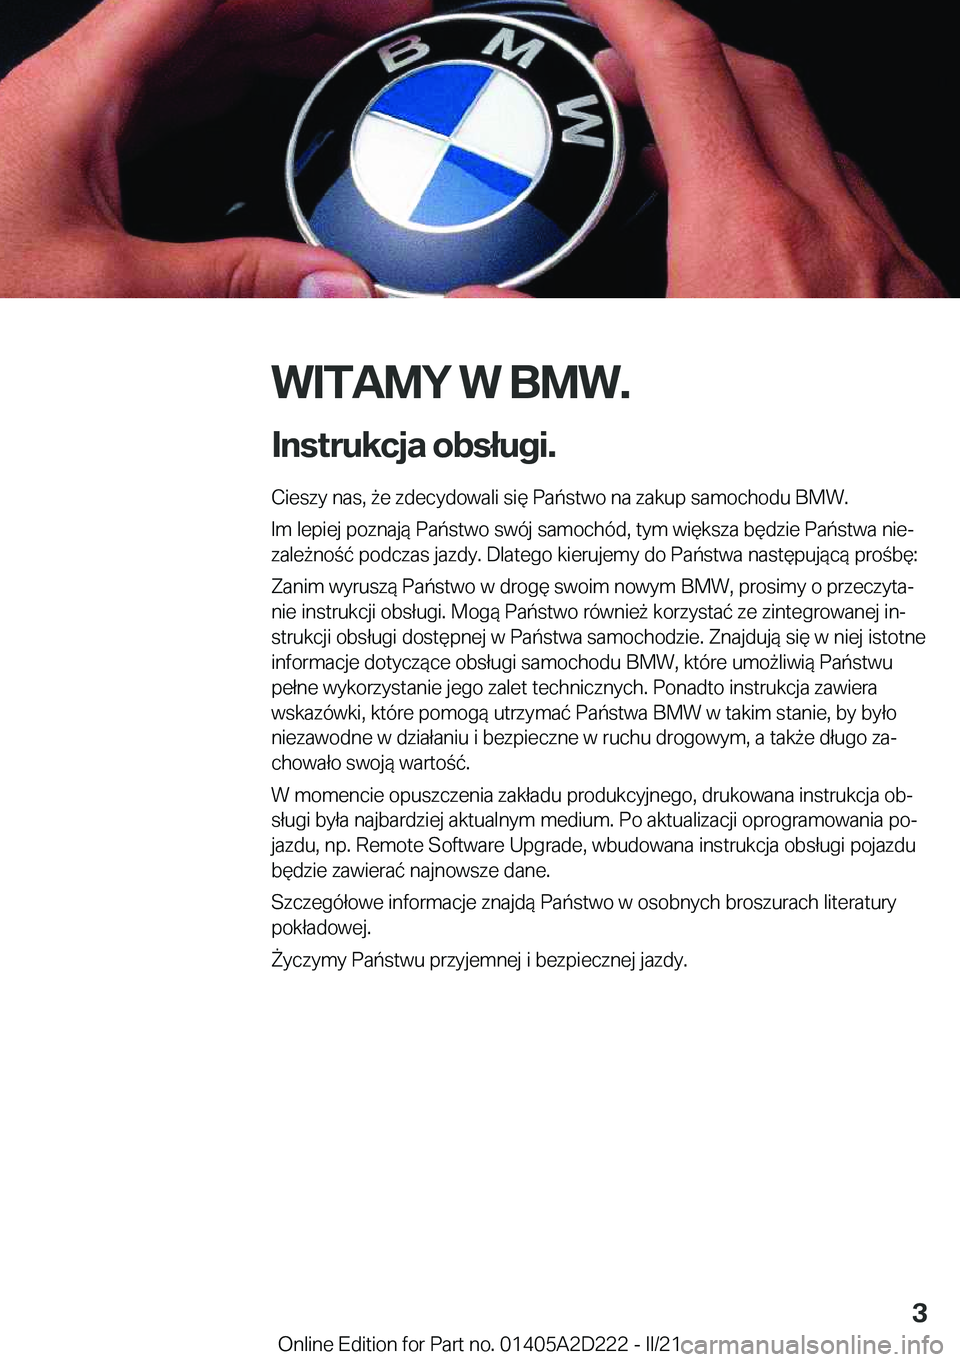 BMW X6 M 2021  Instrukcja obsługi (in Polish) �W�I�T�A�M�Y��W��B�M�W�.
�I�n�s�t�r�u�k�c�j�a��o�b�s�ł�u�g�i�. �C�i�e�s�z�y��n�a�s�,�9�e��z�d�e�c�y�d�o�w�a�l�i��s�i�